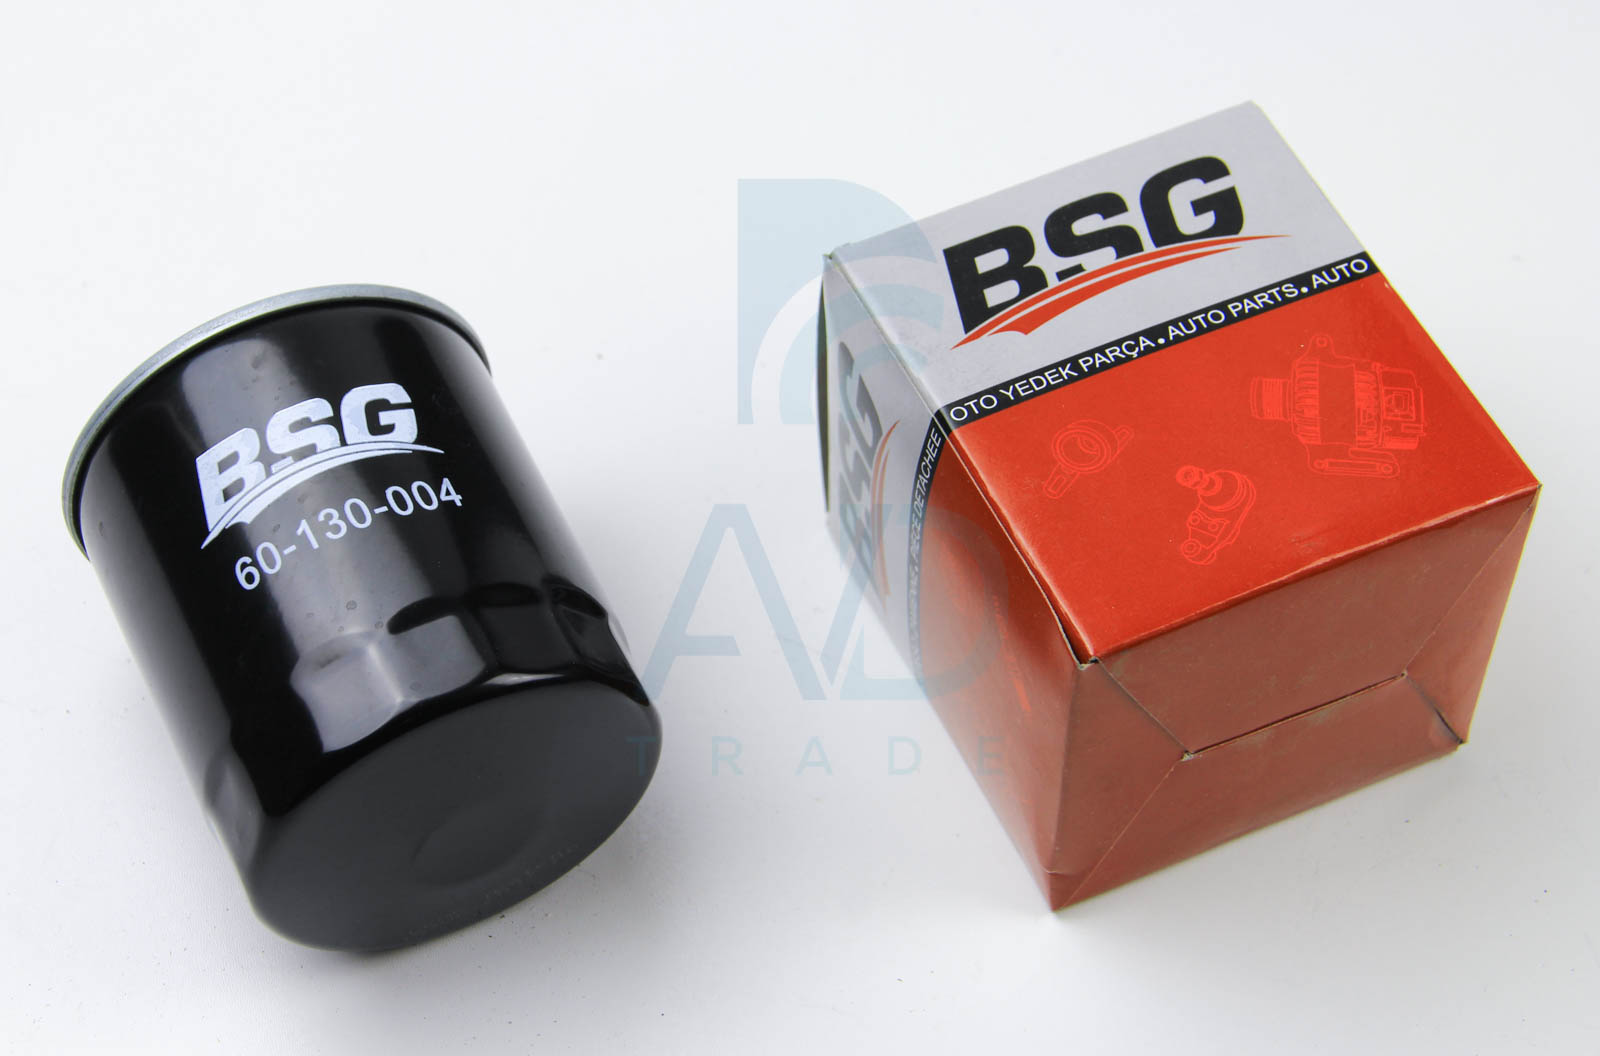 Топливный фильтр BOSCH арт. BSG 60-130-004